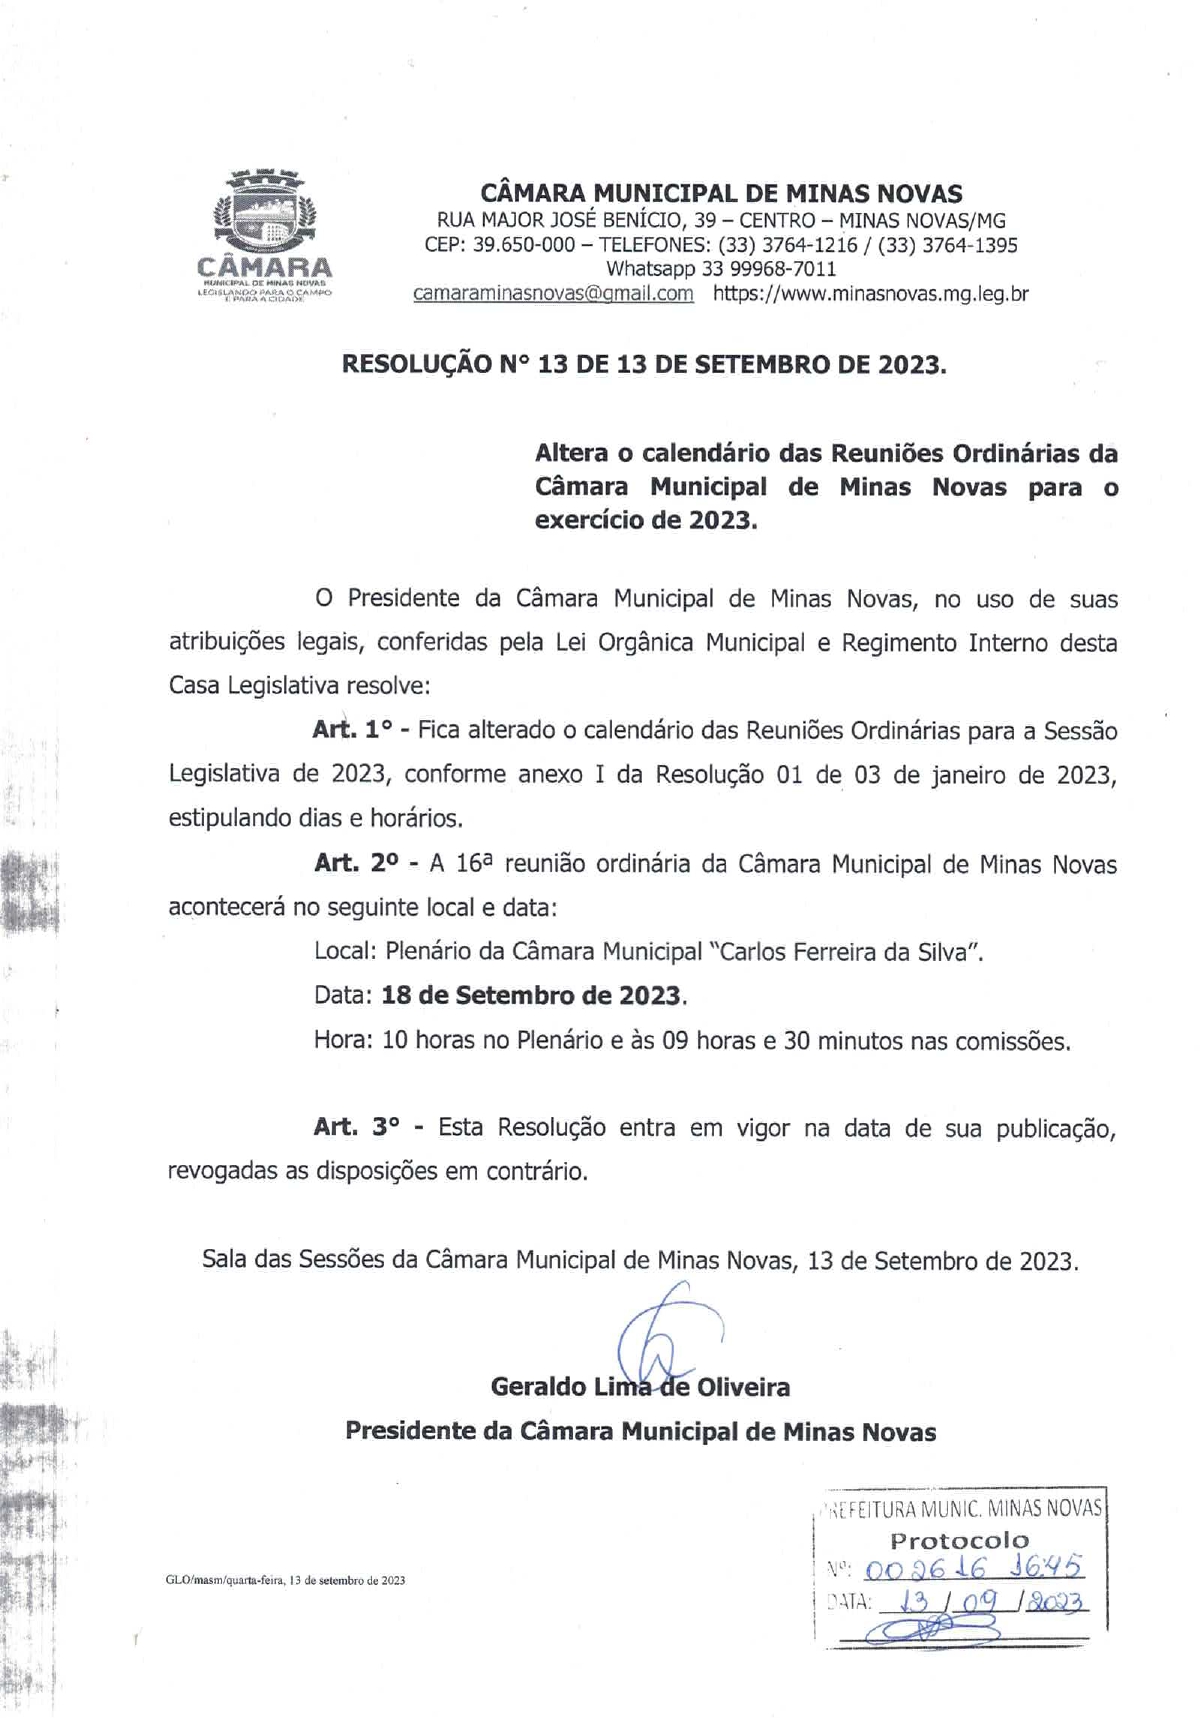 CONVITE - 16ª Reunião Ordinária da Câmara Municipal de Minas Novas (Exercício de 2023)